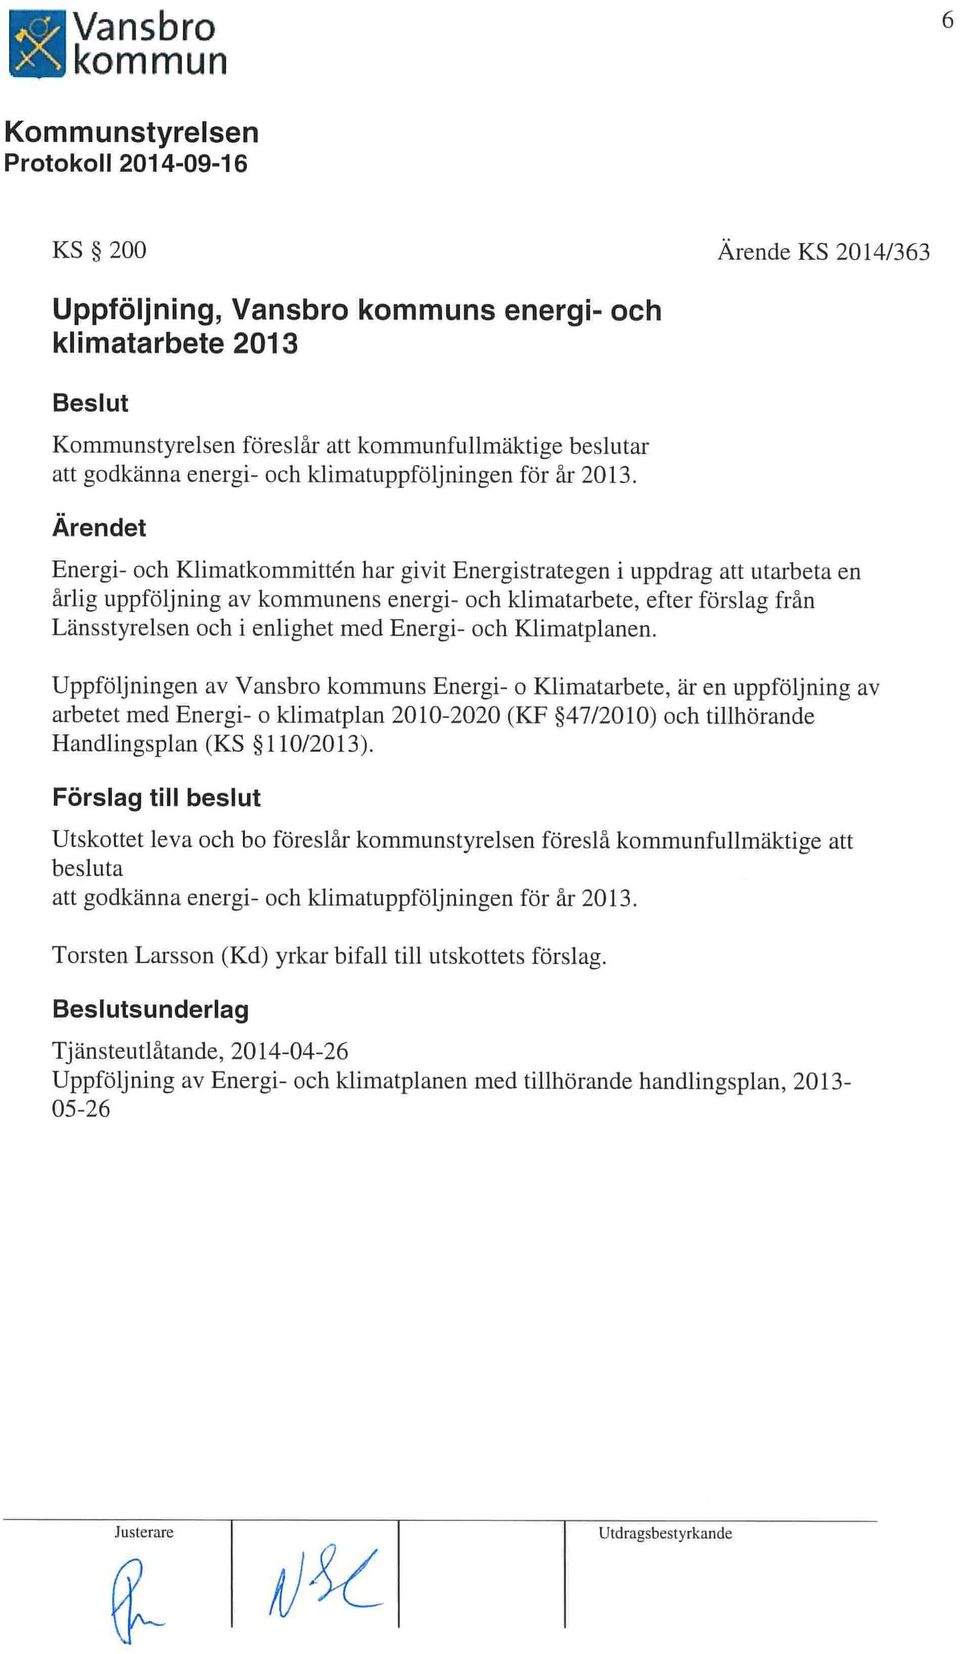 Klimatpianen. Llppföljningen av Vansbro s Energi- o Klimatarbete, är en uppföljning av arbetet med Energi- o klirnatpian 20 10-2020 (KF 47/20 10) och tillhörande Handlingsplan (KS 110/2013).